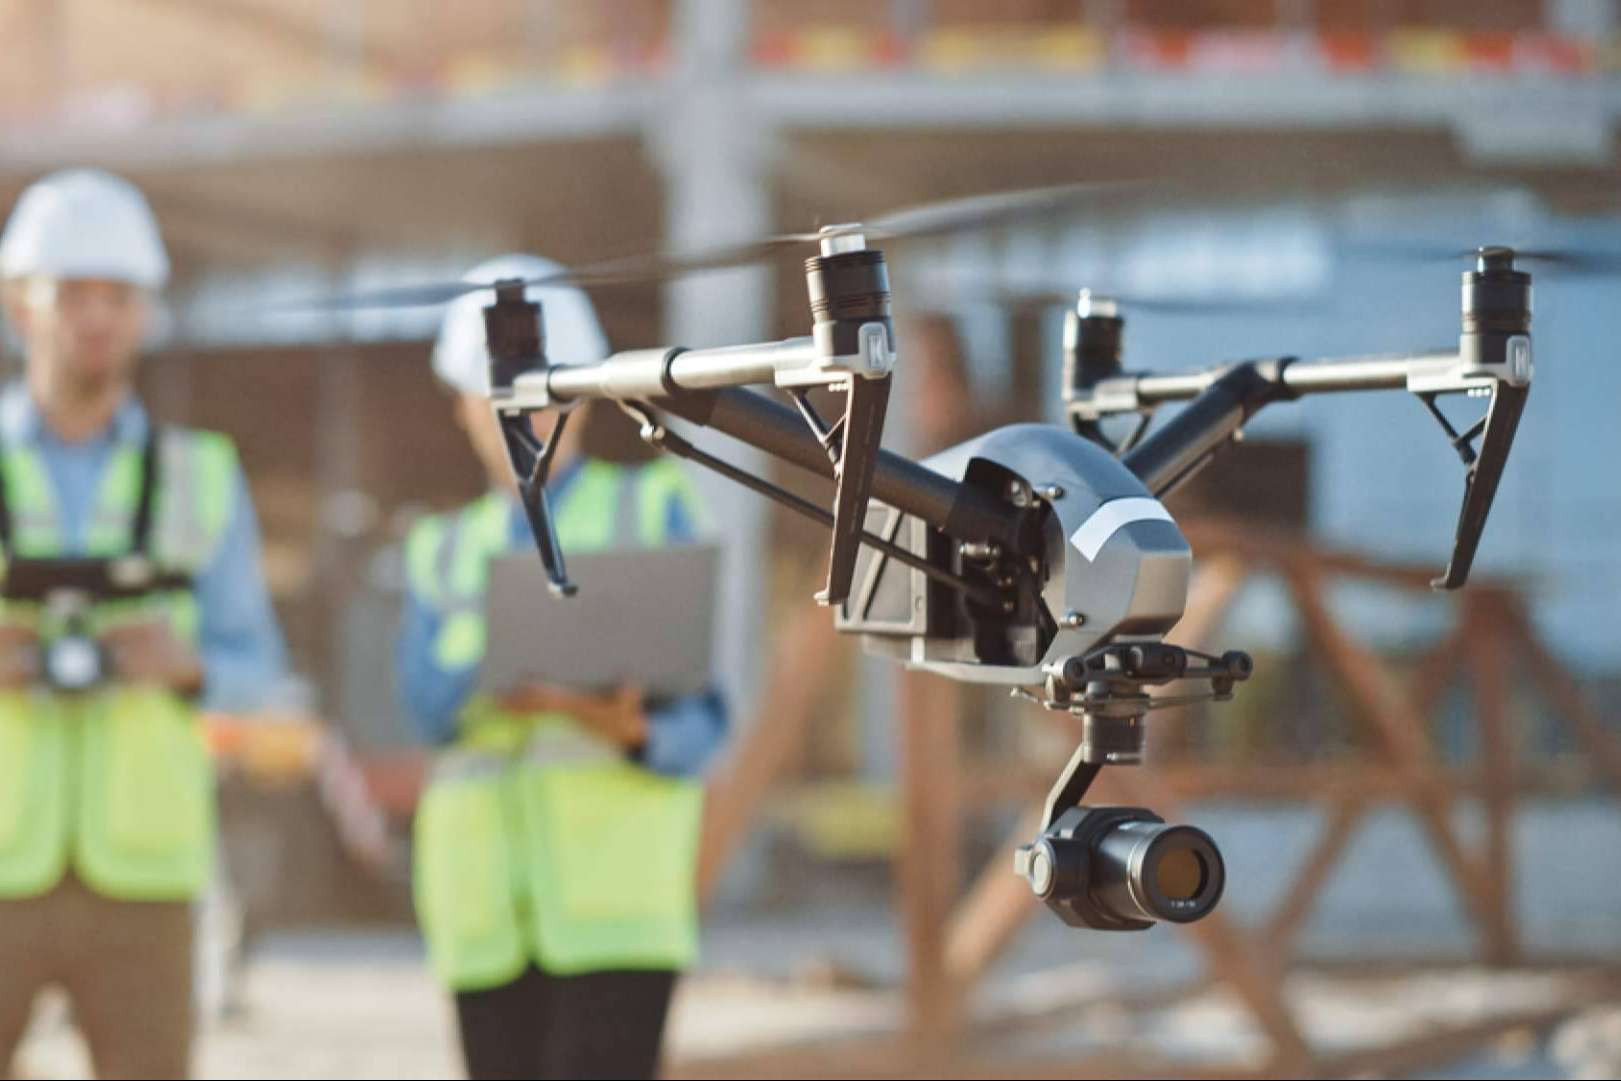  Este año, se les exigirá a las empresas y operadores de drones aeronaves con marcado CE y marcado de clase para pilotar 